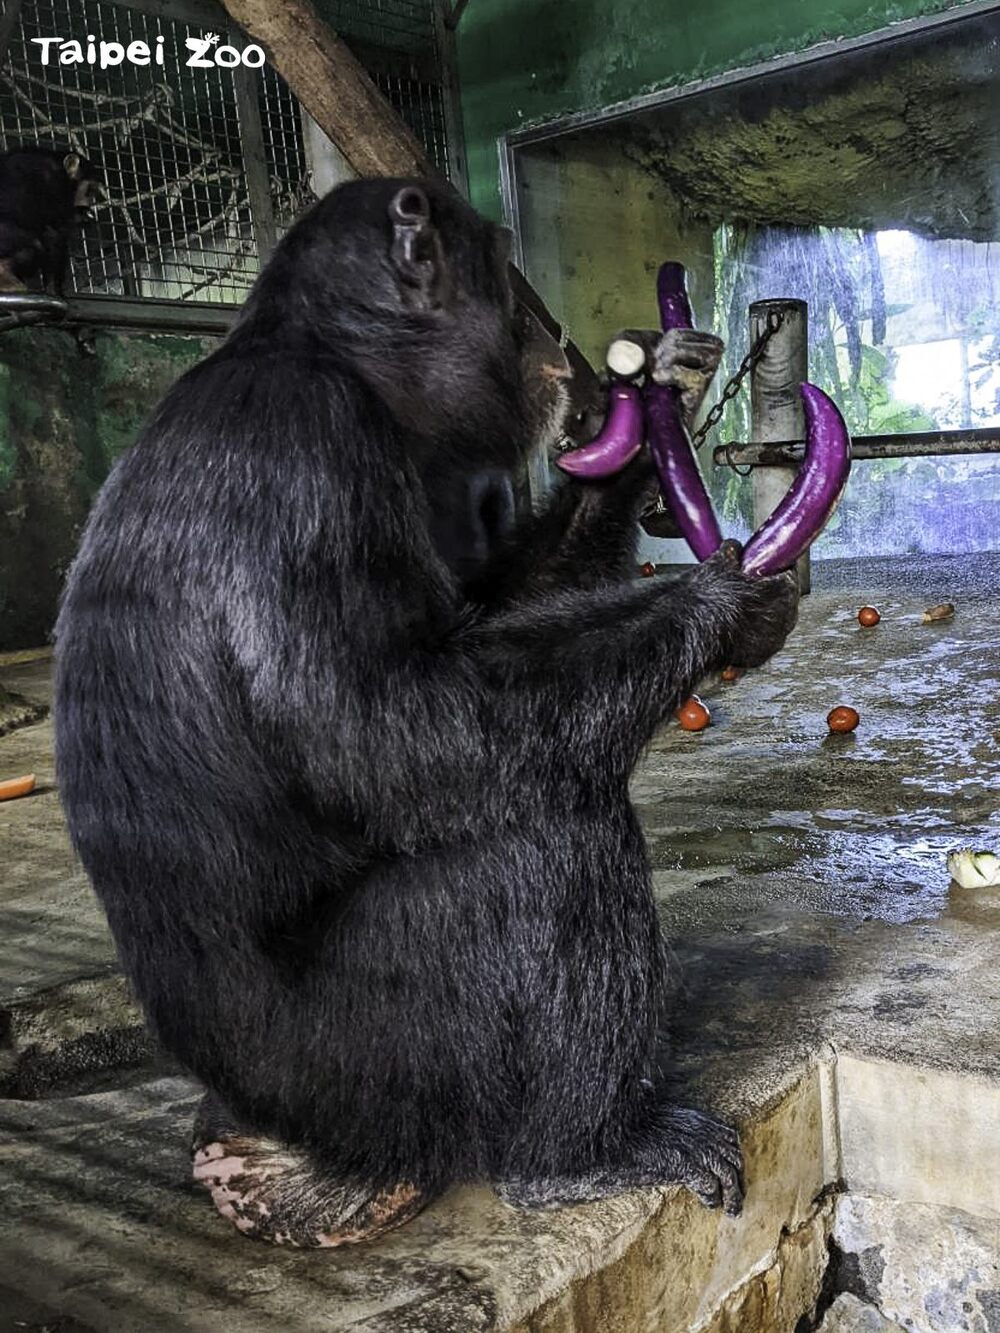 年輕黑猩猩玩心重 將挑食所剩食材「擺盤布陣」 許願更多好吃的食物 | 苦瓜、青椒、茄子等都是黑猩猩的心頭好，甚至會為了搶茄子吵架  / 圖文來源 台北市立動物園